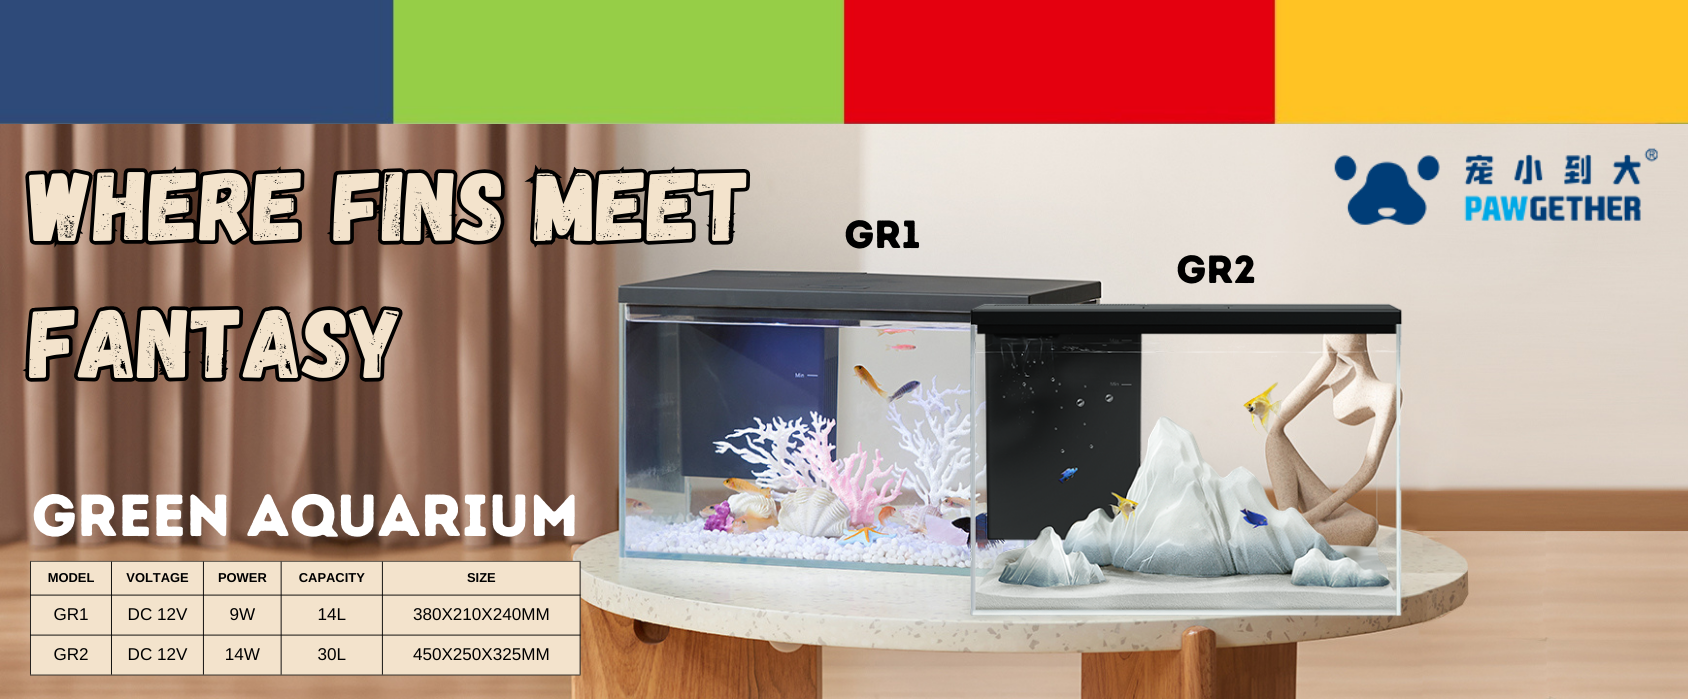 New Arrival! Boyu Pawgether Aquarium - GR 1 and GR 2